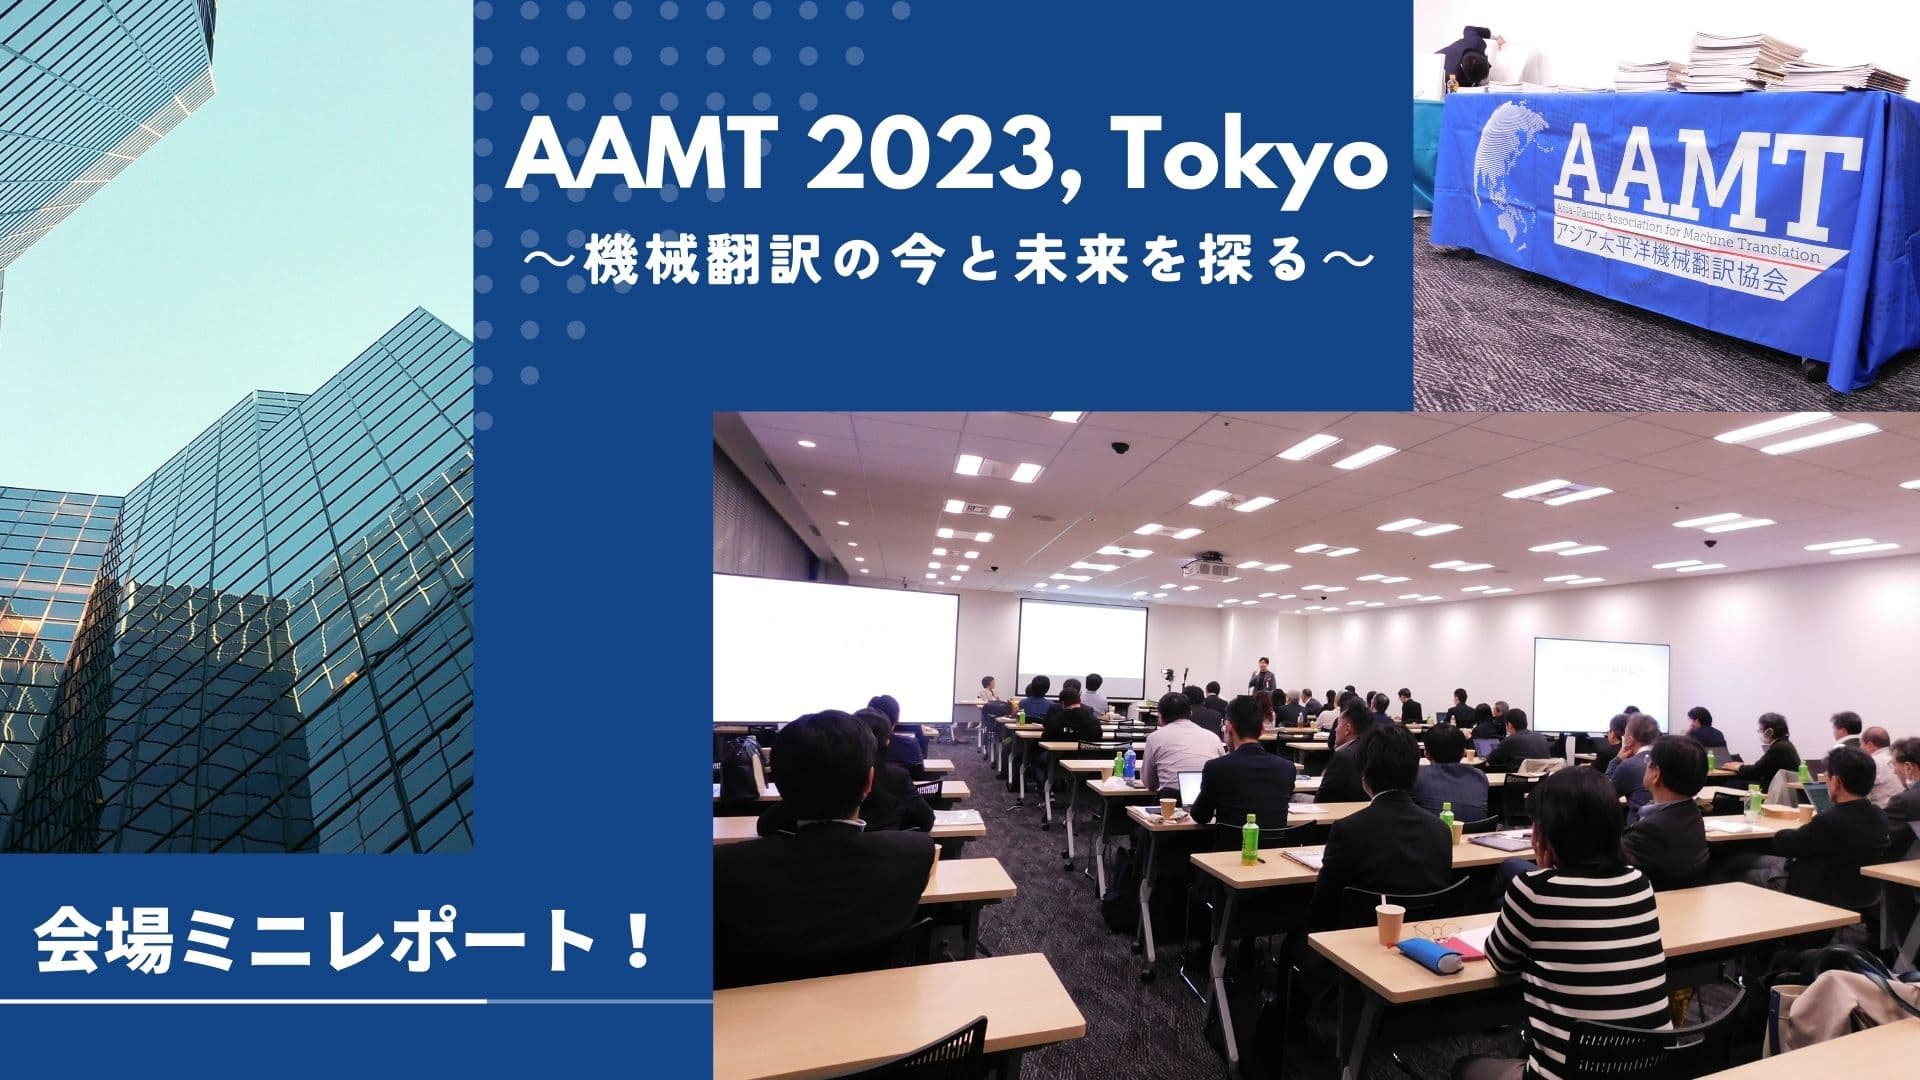 AAMT 2023, Tokyo 会場ミニレポート！